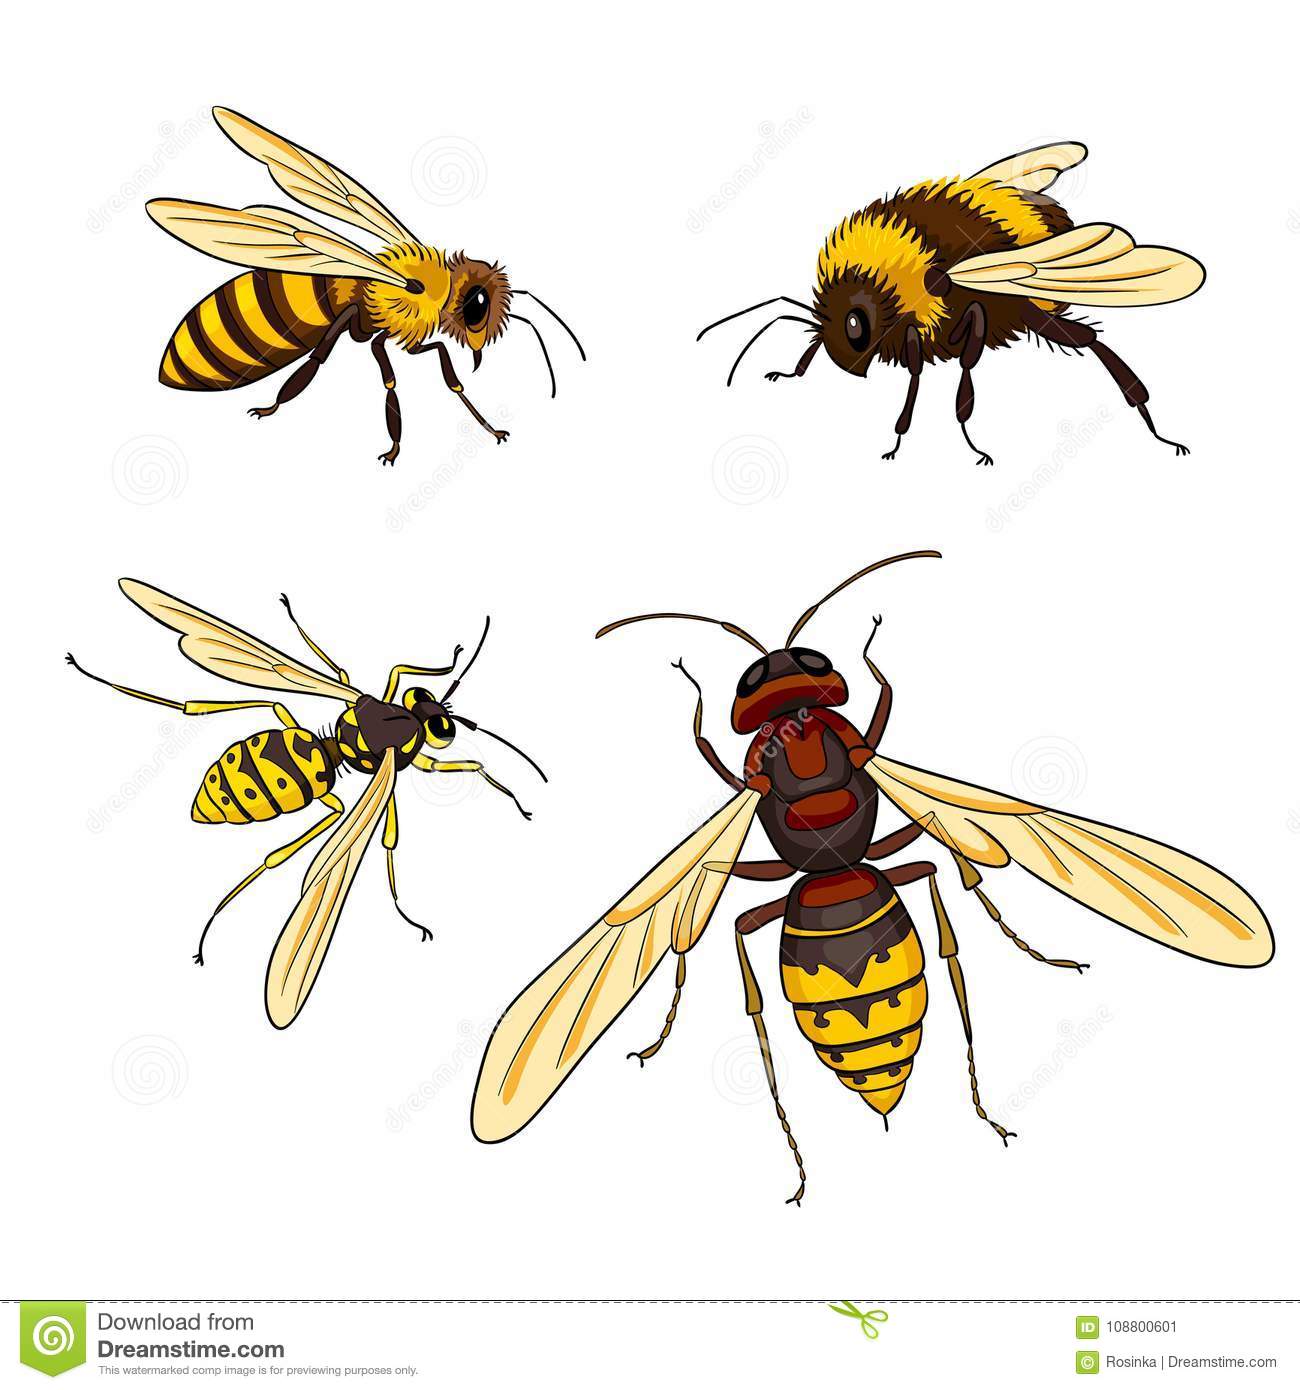 Чем отличается оса от пчелы и шершня